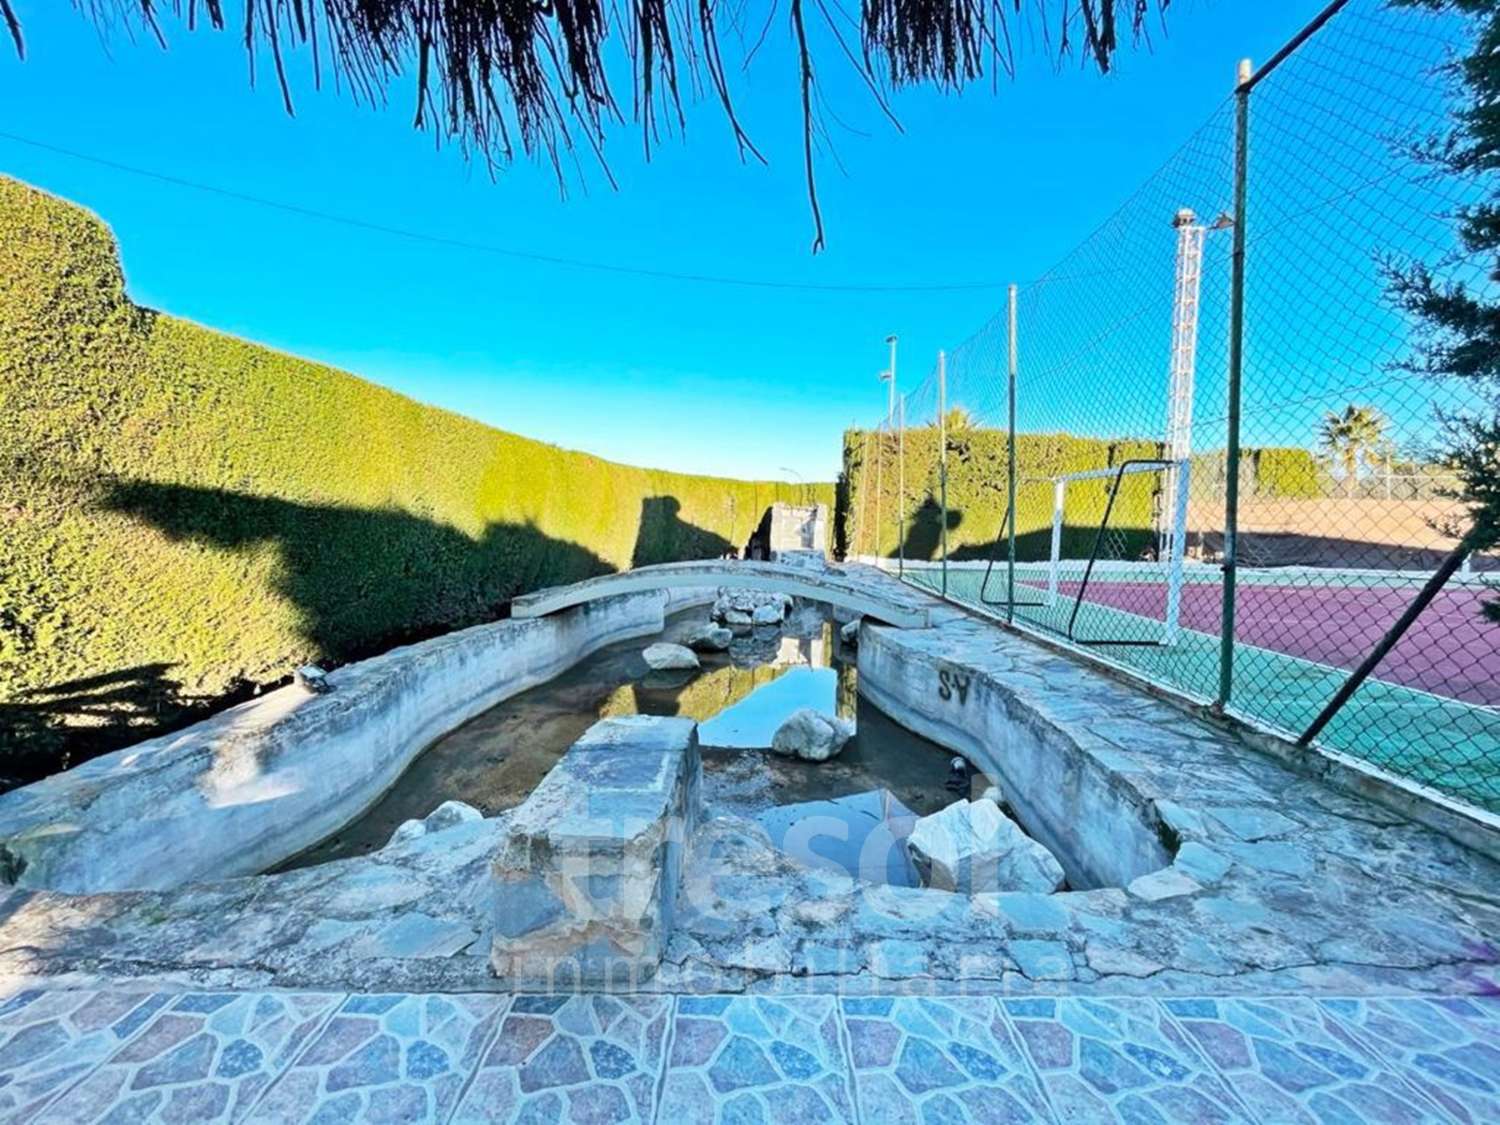 Villa independiente DISPONIBLE YA, con piscina y pista de tenis en zona baja de a Urb. Pinos de Alhaurín.